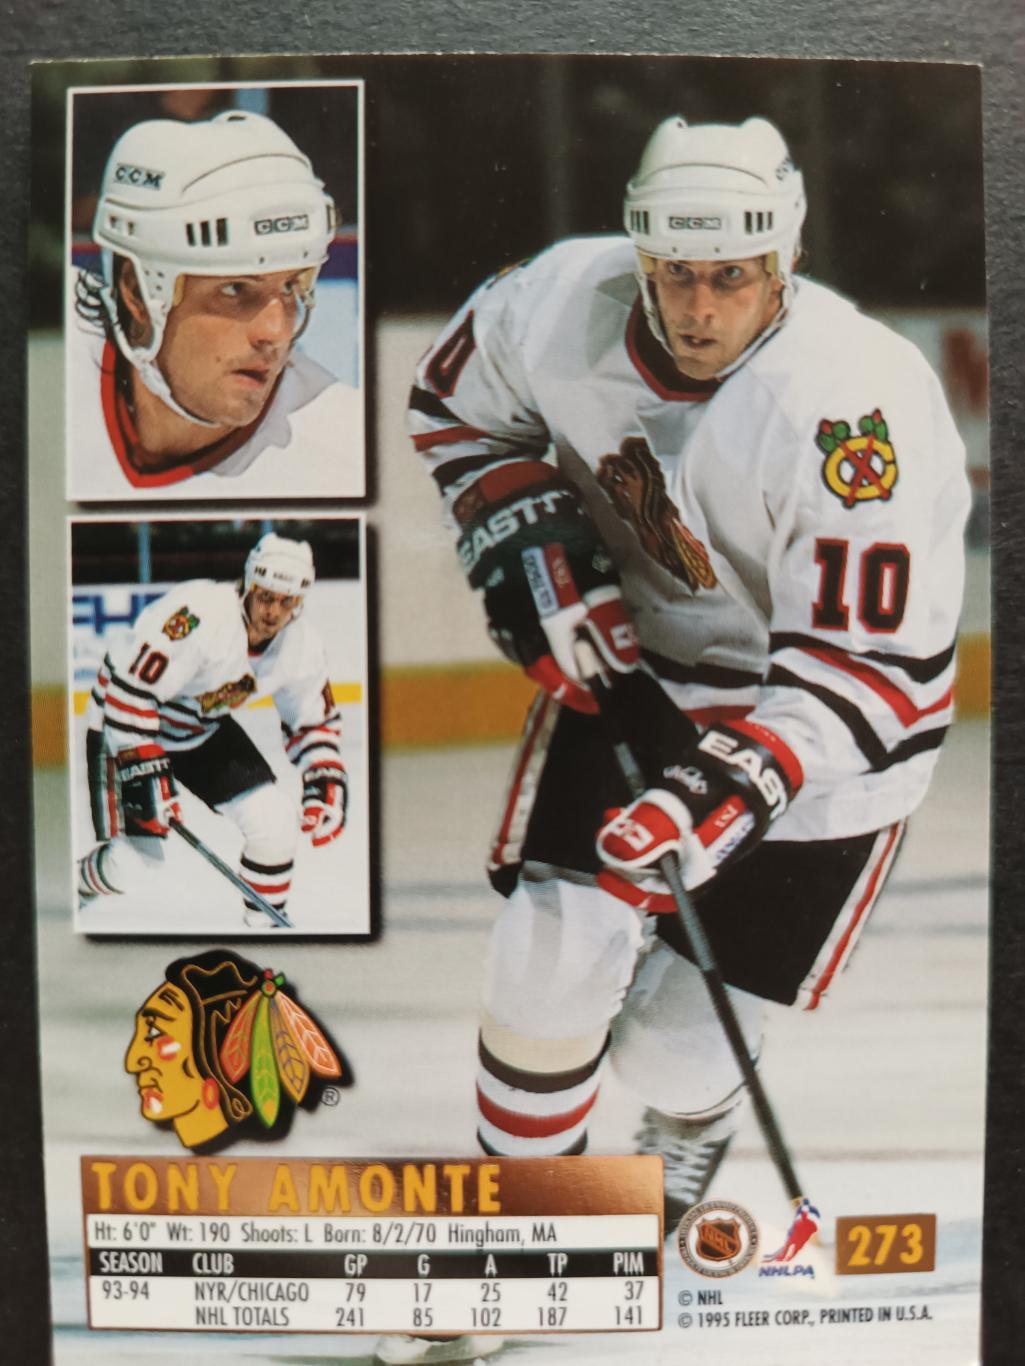 ХОККЕЙ КАРТОЧКА НХЛ FLEER ULTRA 1994-95 NHL TONY AMONTE BLACK HAWKS #273 1